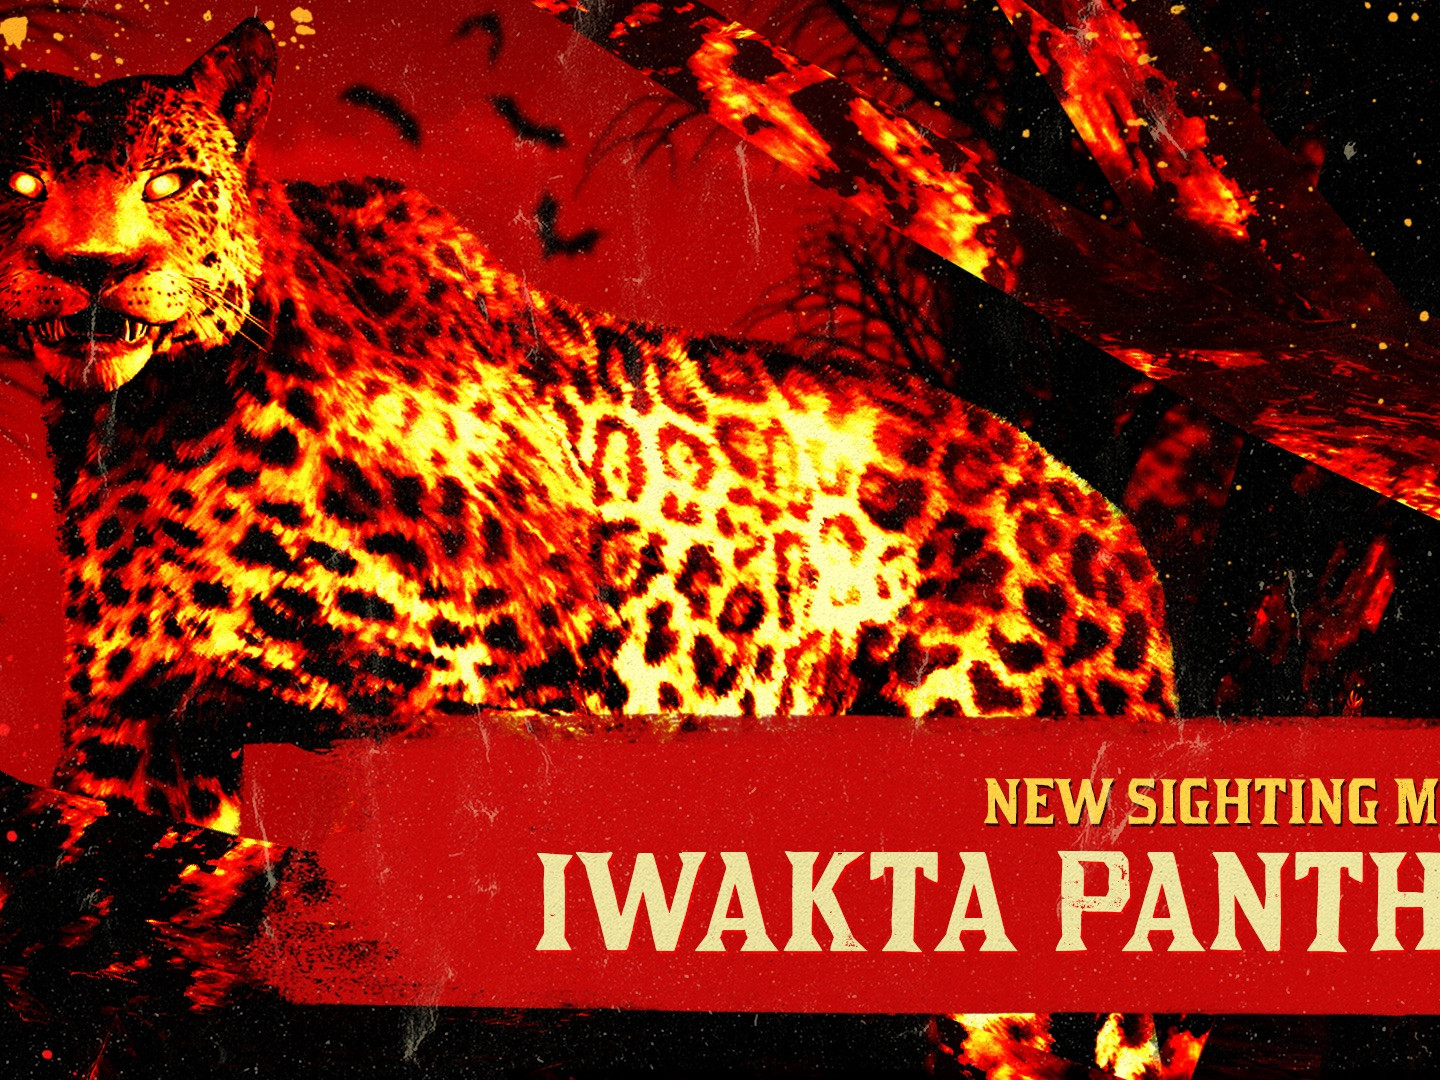 La panthère Iwakta apparaît dans Red Dead Online